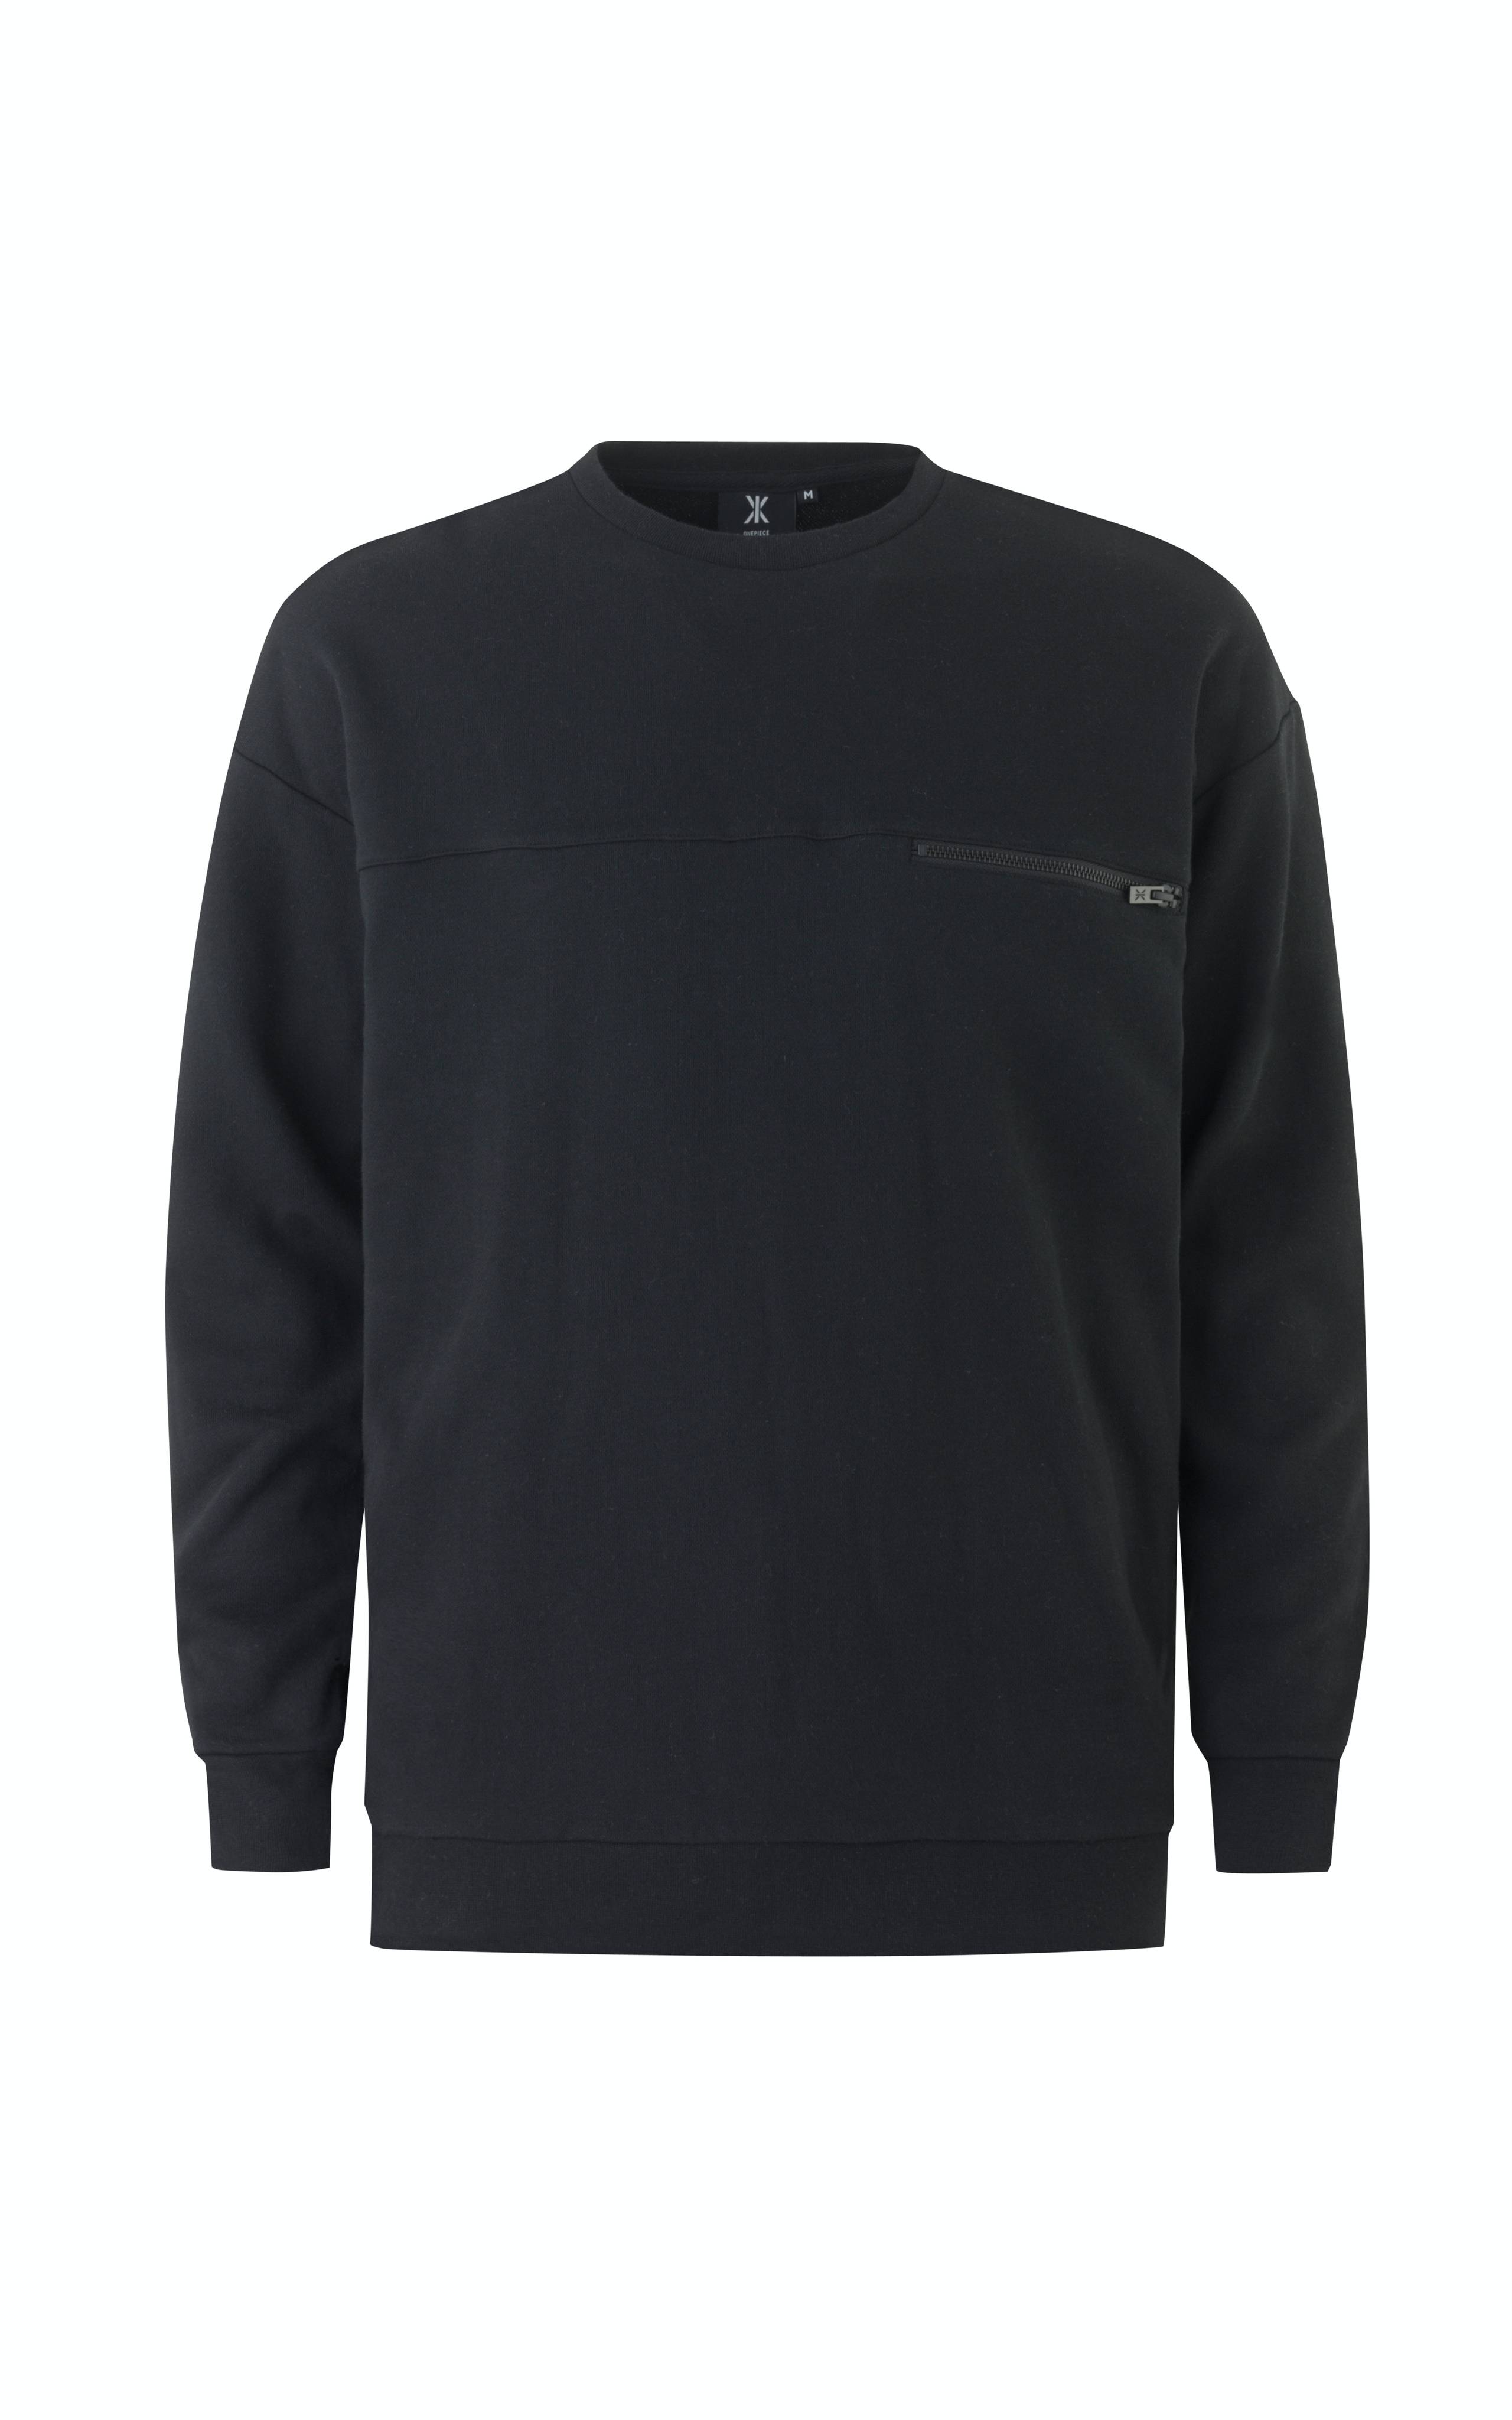 Onepiece Plunge Sweater Black - 1